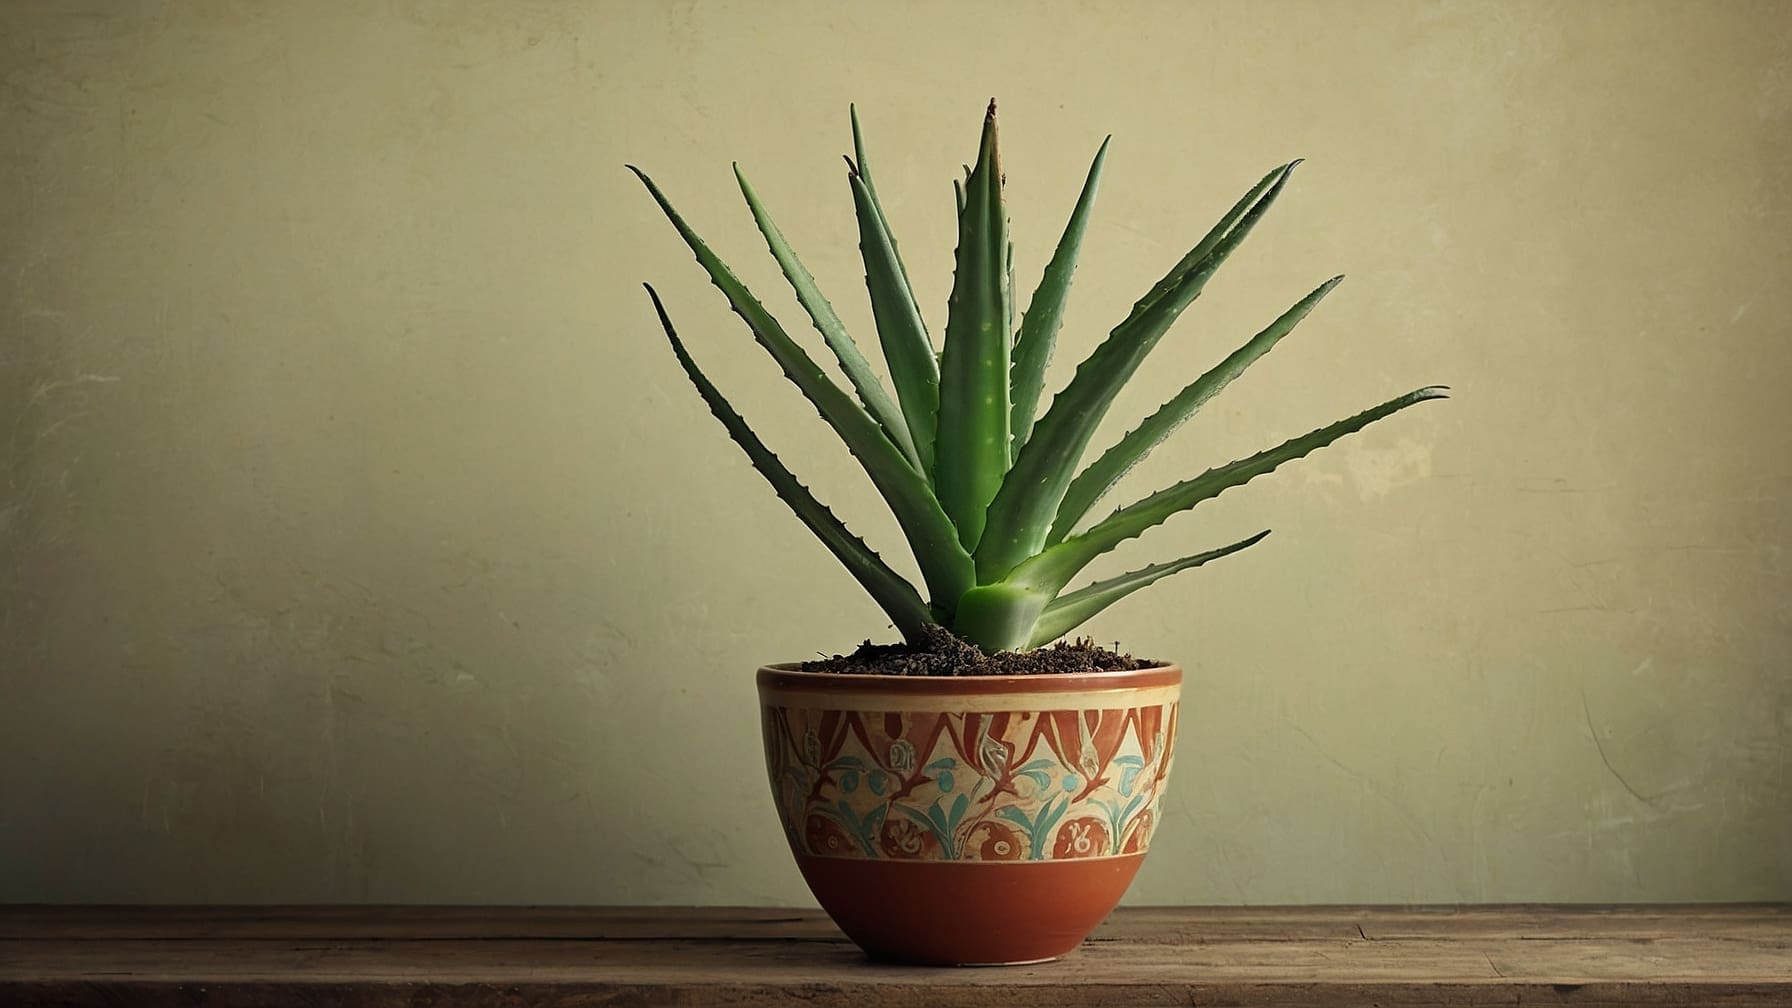 Coltivare Aloe Vera efficacemente: scopri 10 segreti essenziali per la cura, dalla scelta del vaso alla raccolta del gel, per una pianta sana